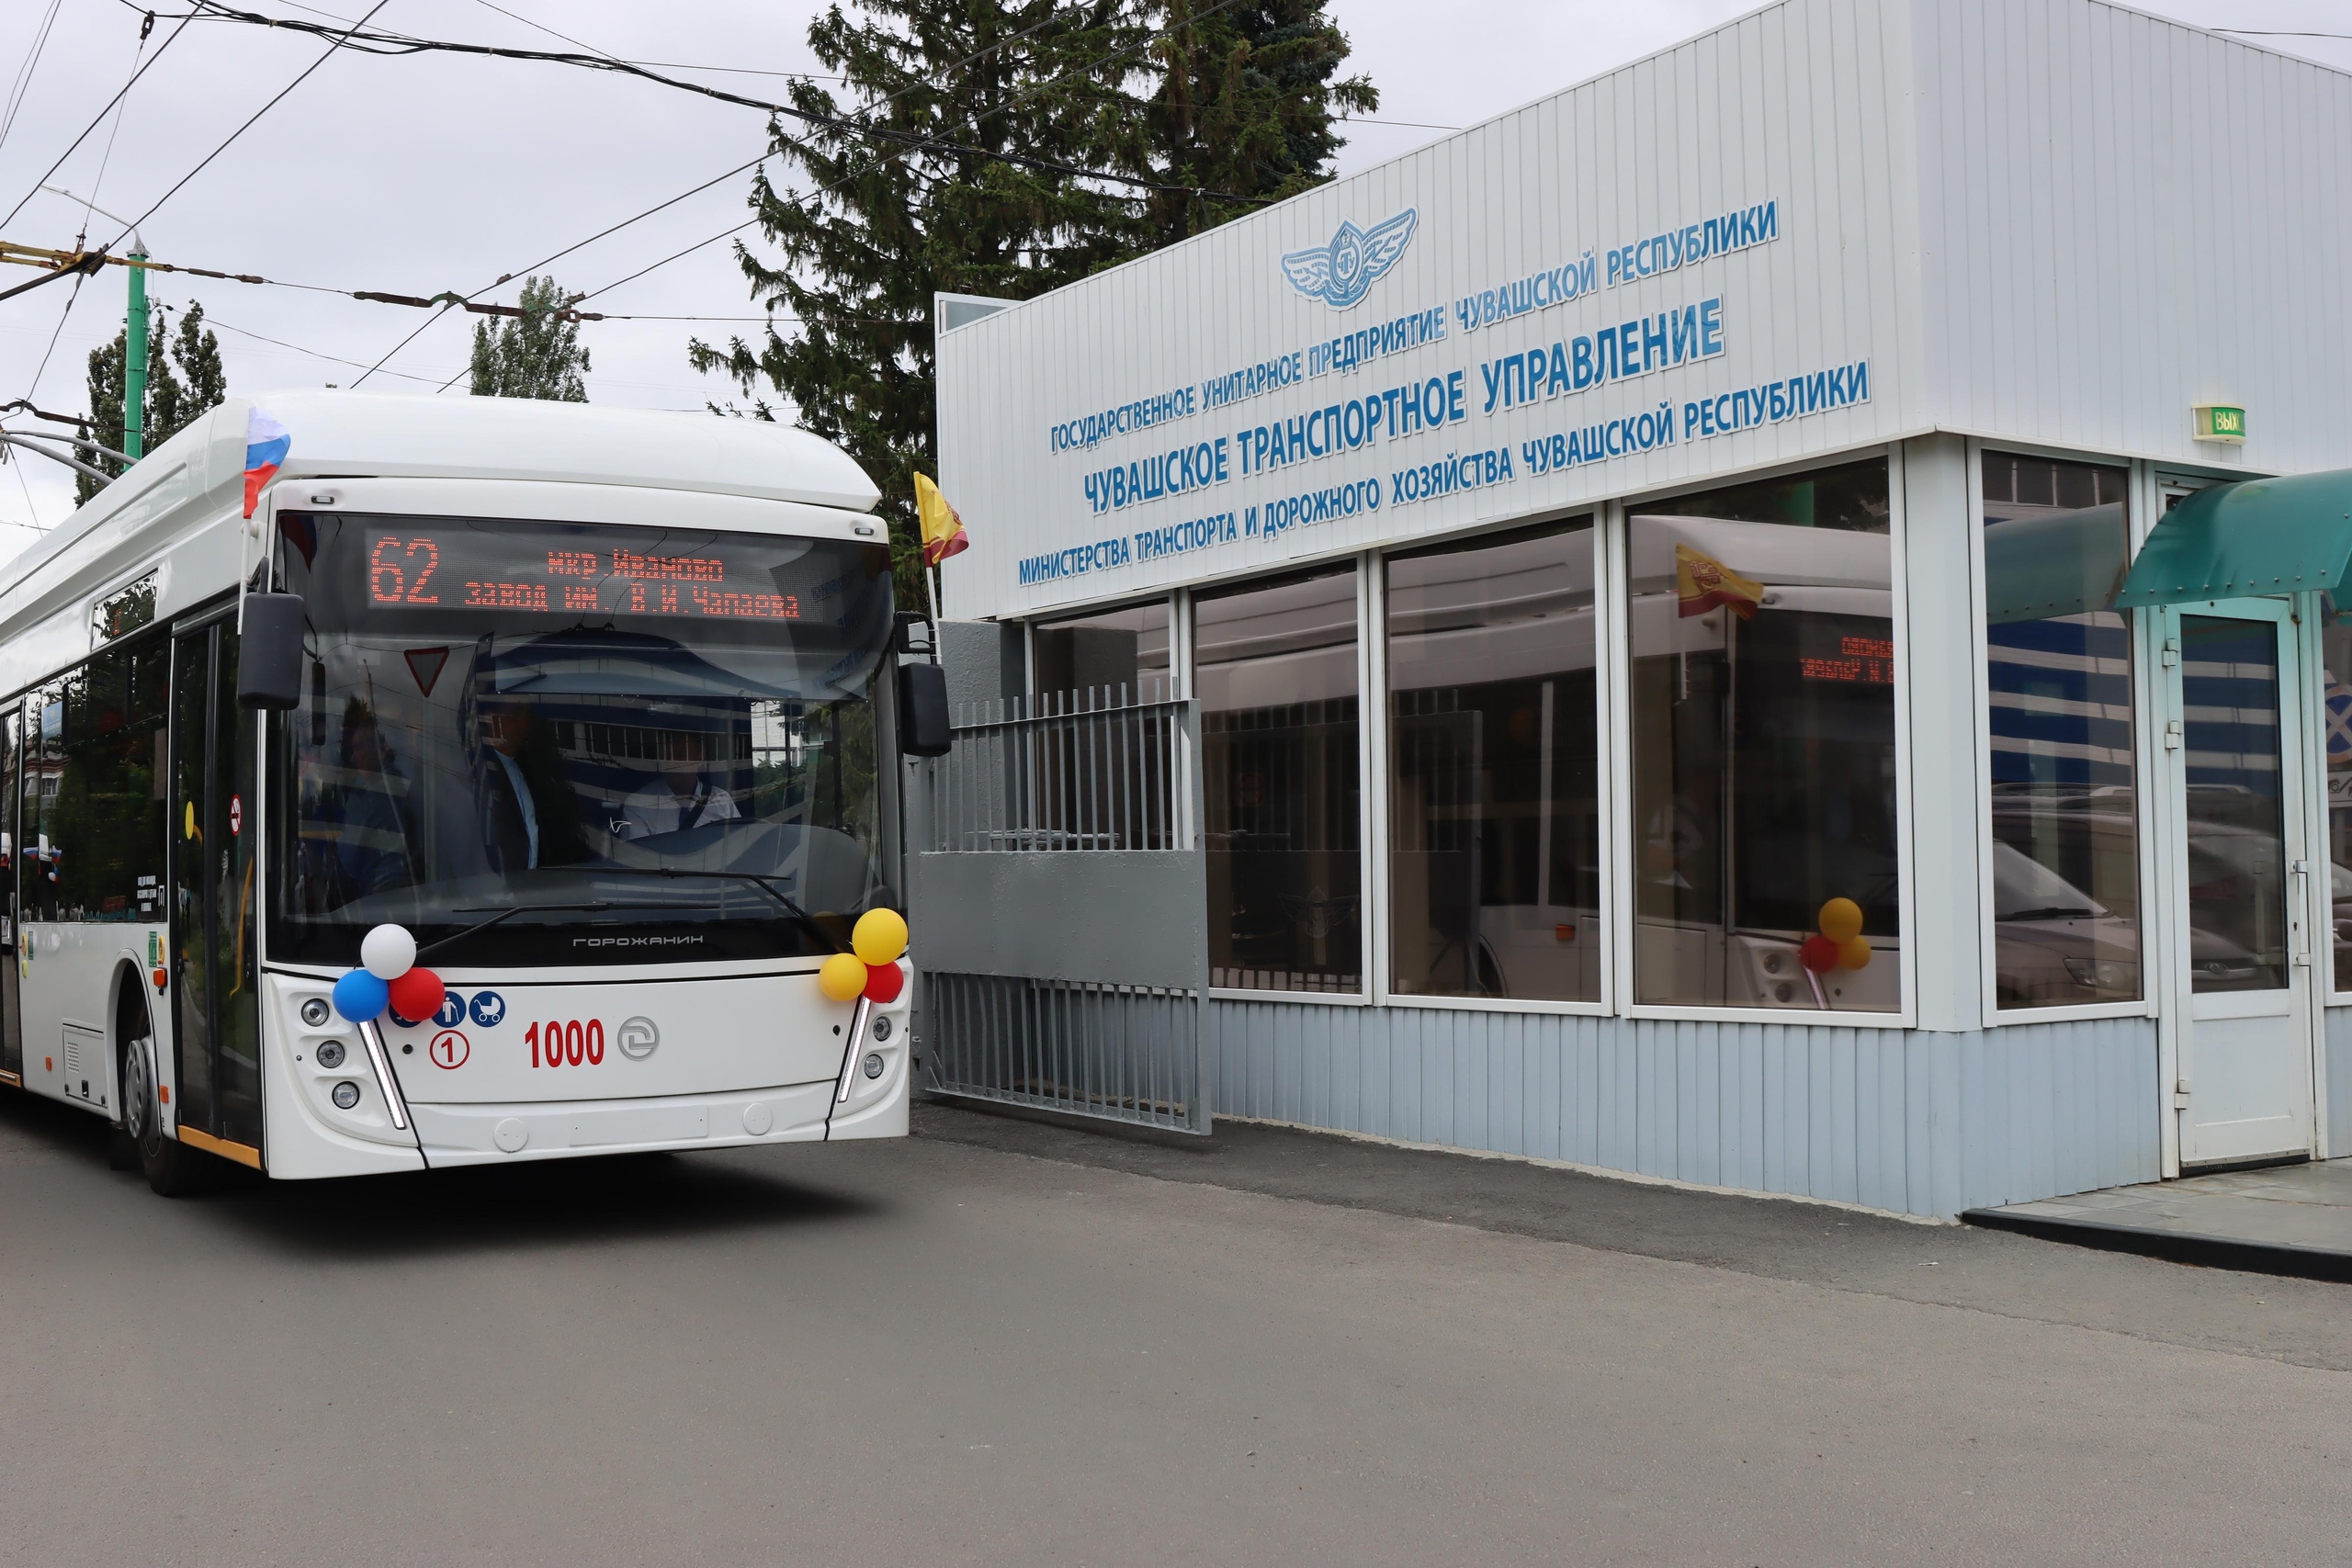 Стало известно расписание нового троллейбуса из Чебоксар до Новочебоксарска